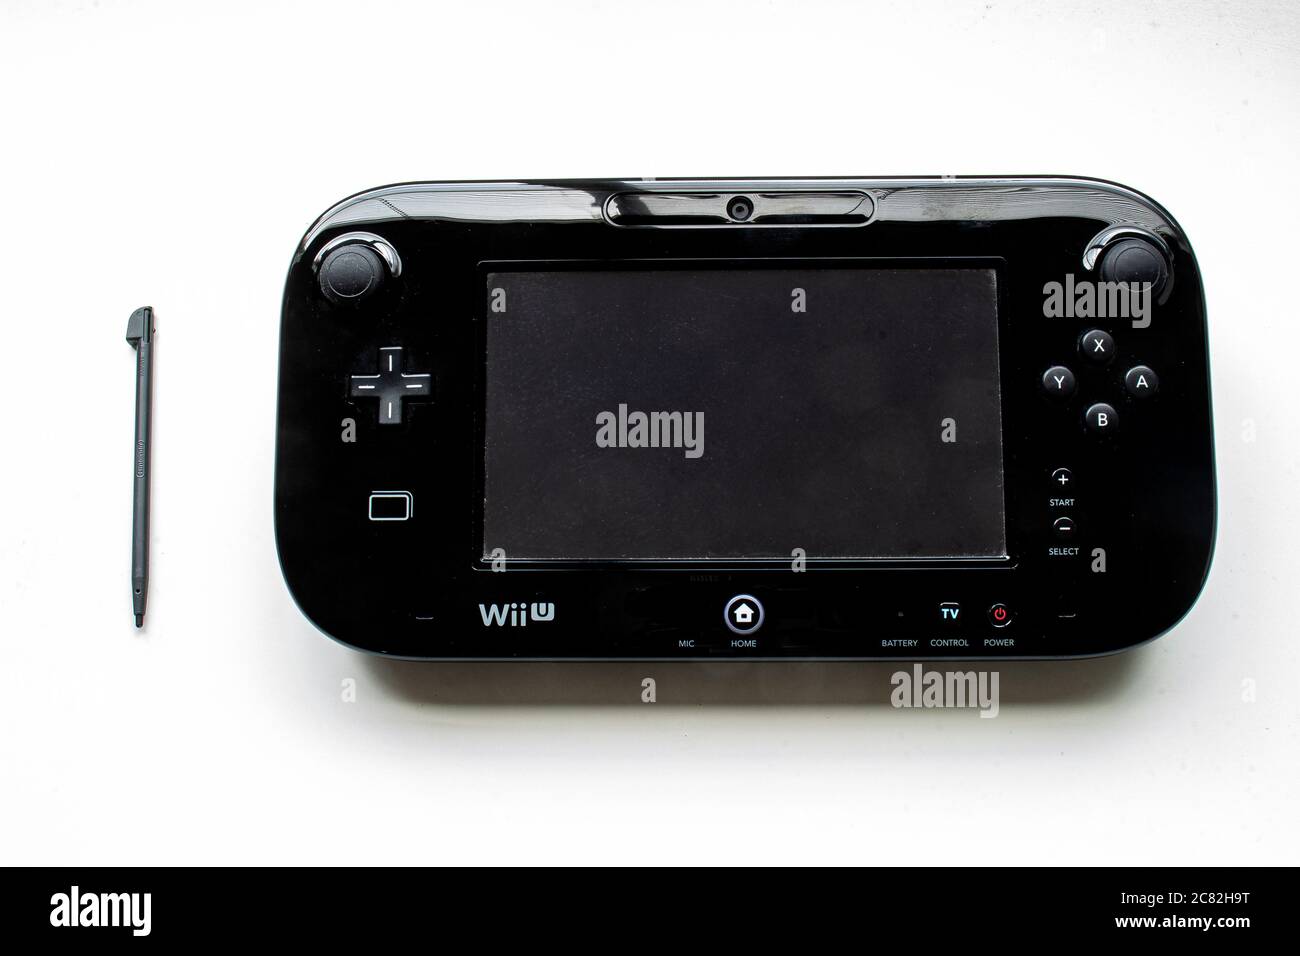 Wii u immagini e fotografie stock ad alta risoluzione - Alamy